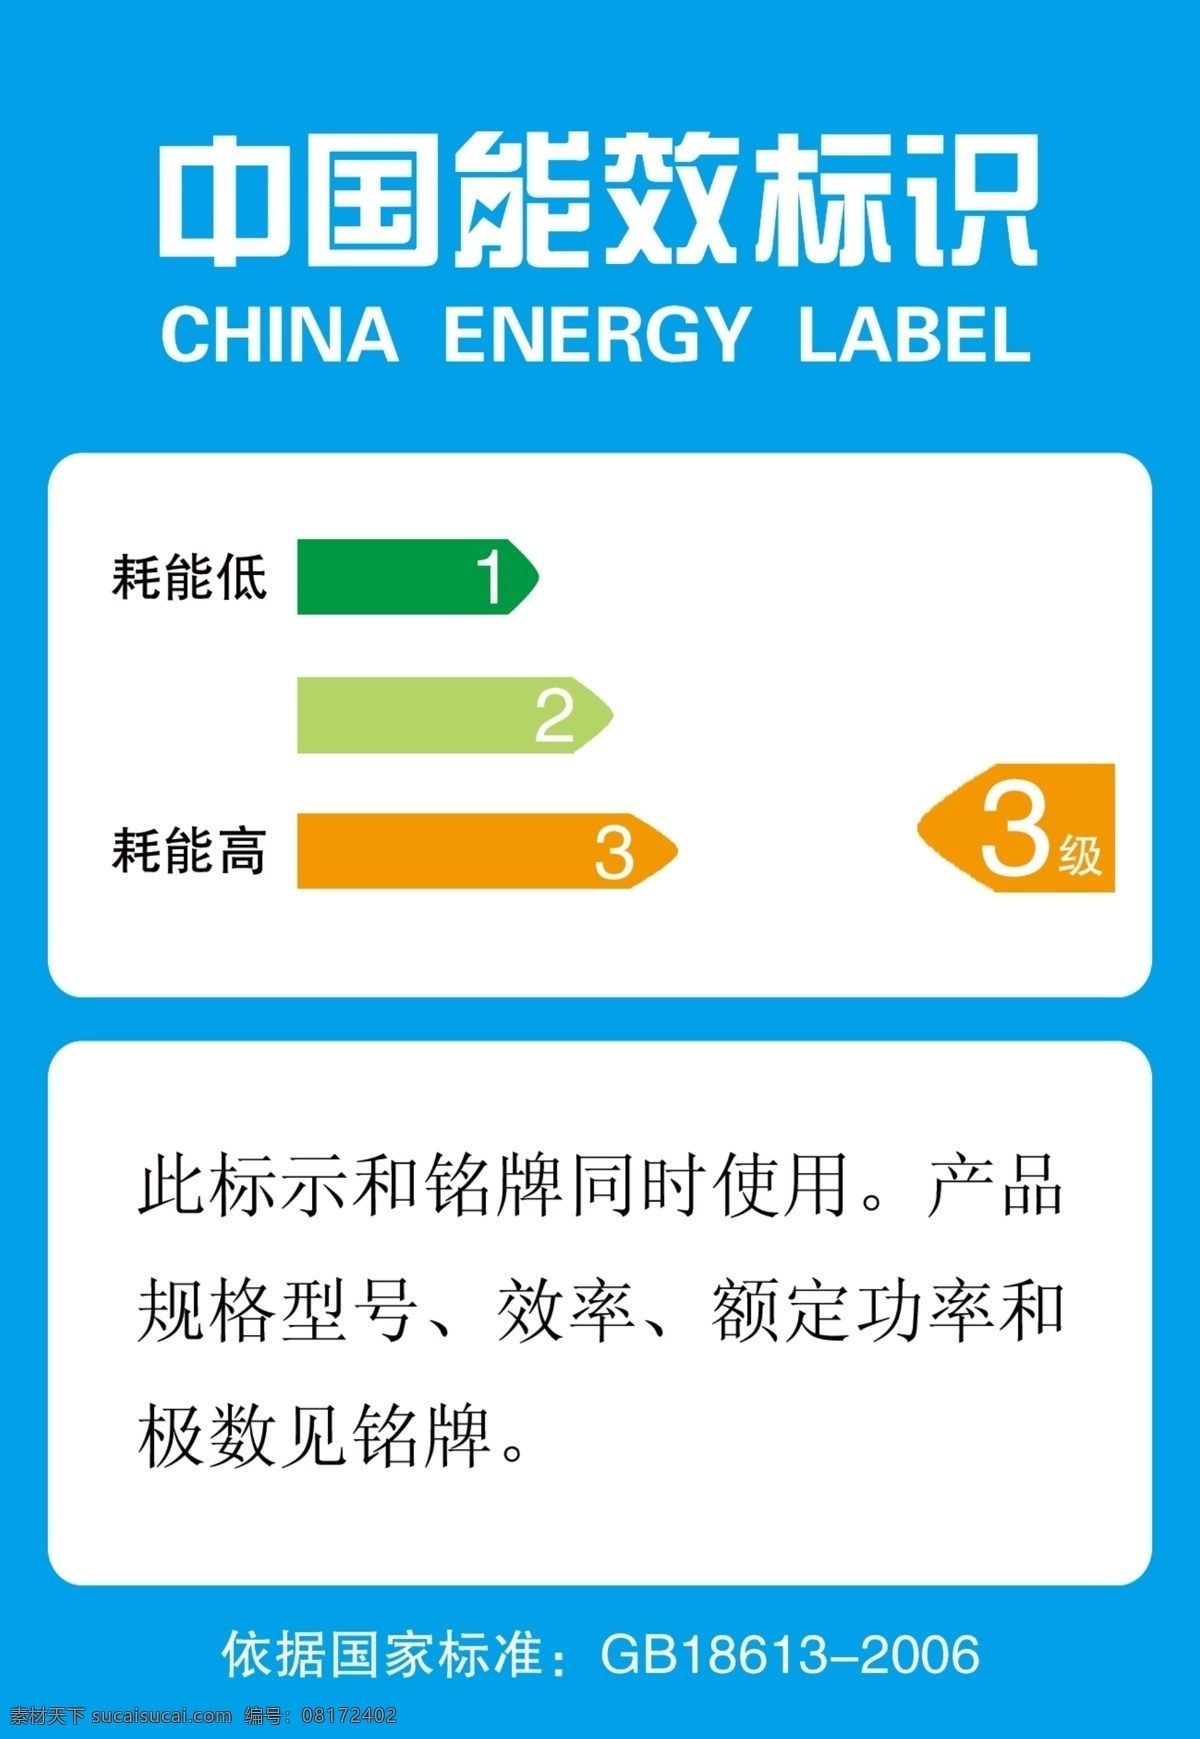 中国能效标识 标识 能源标识 标识标志图标 公共标识标志 psd源文件 jpg文件 分层 源文件